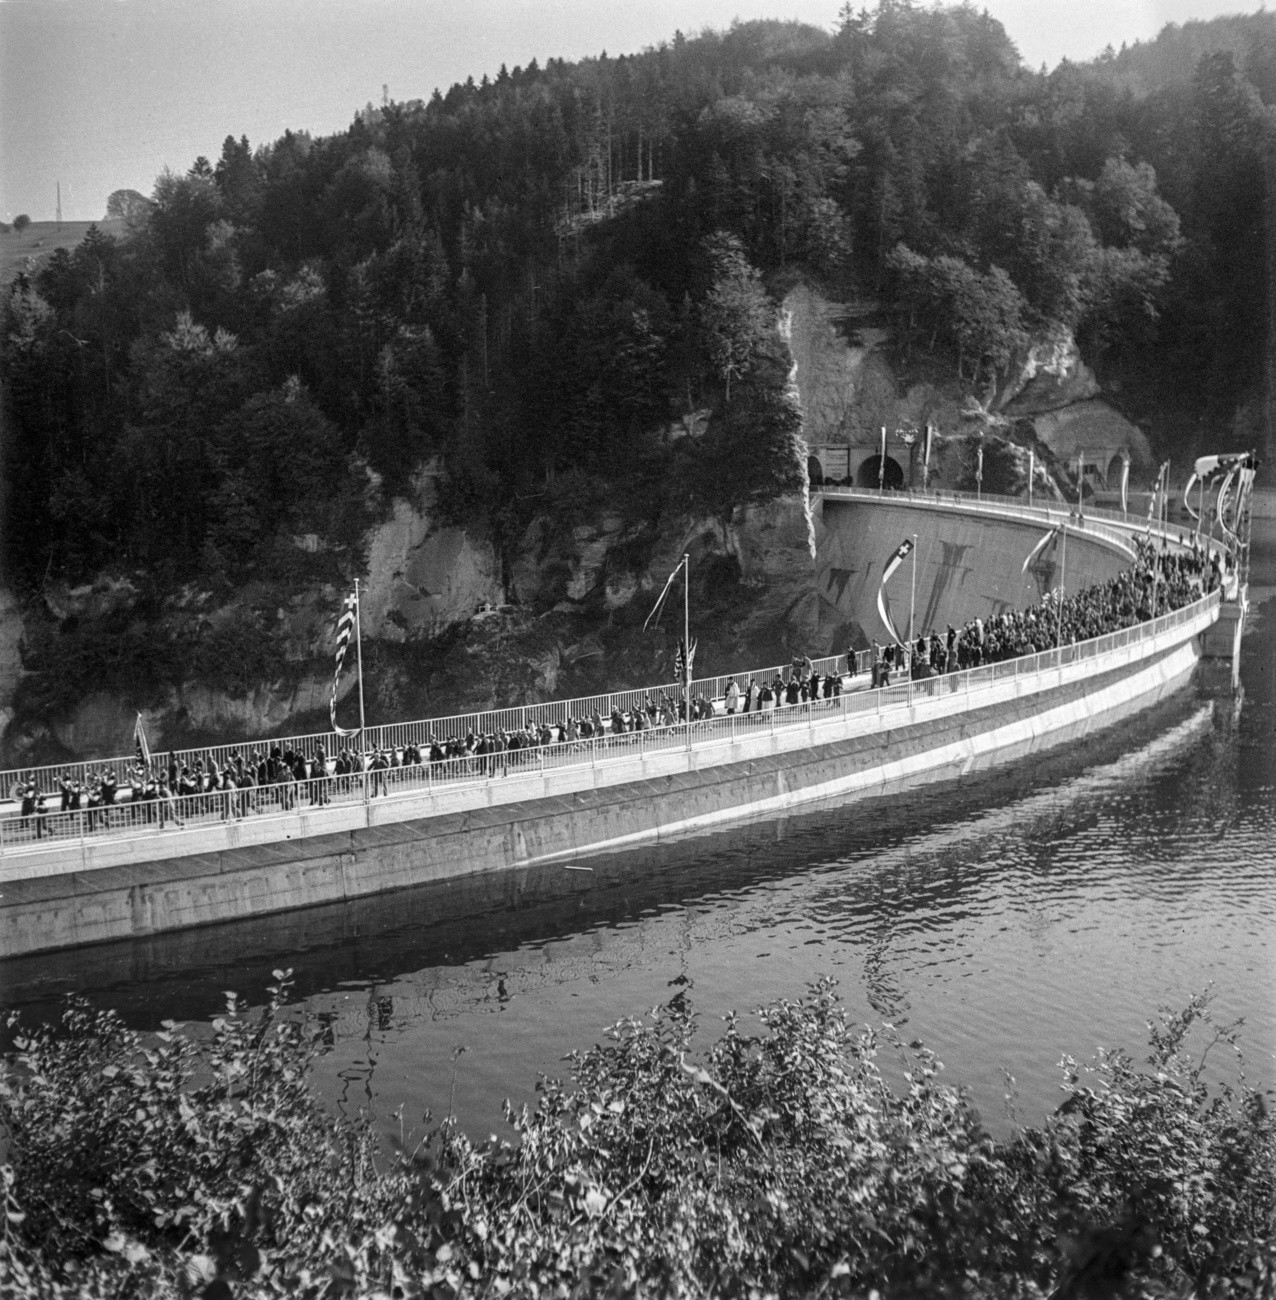 Im Kanton Freiburg wird der Lac de la Gruyère (Greyerzersee) eingeweiht. Mit einer Länge von 13,5 Kilometer ist er der längste Stausee in der Schweiz. Im See liegt das Inselchen Île d’Ogoz. Das Bild zeigt die Einweihung der Staumauer bei Rossens. (Foto: Keystone/Photopress-Archiv/Walter Studer)